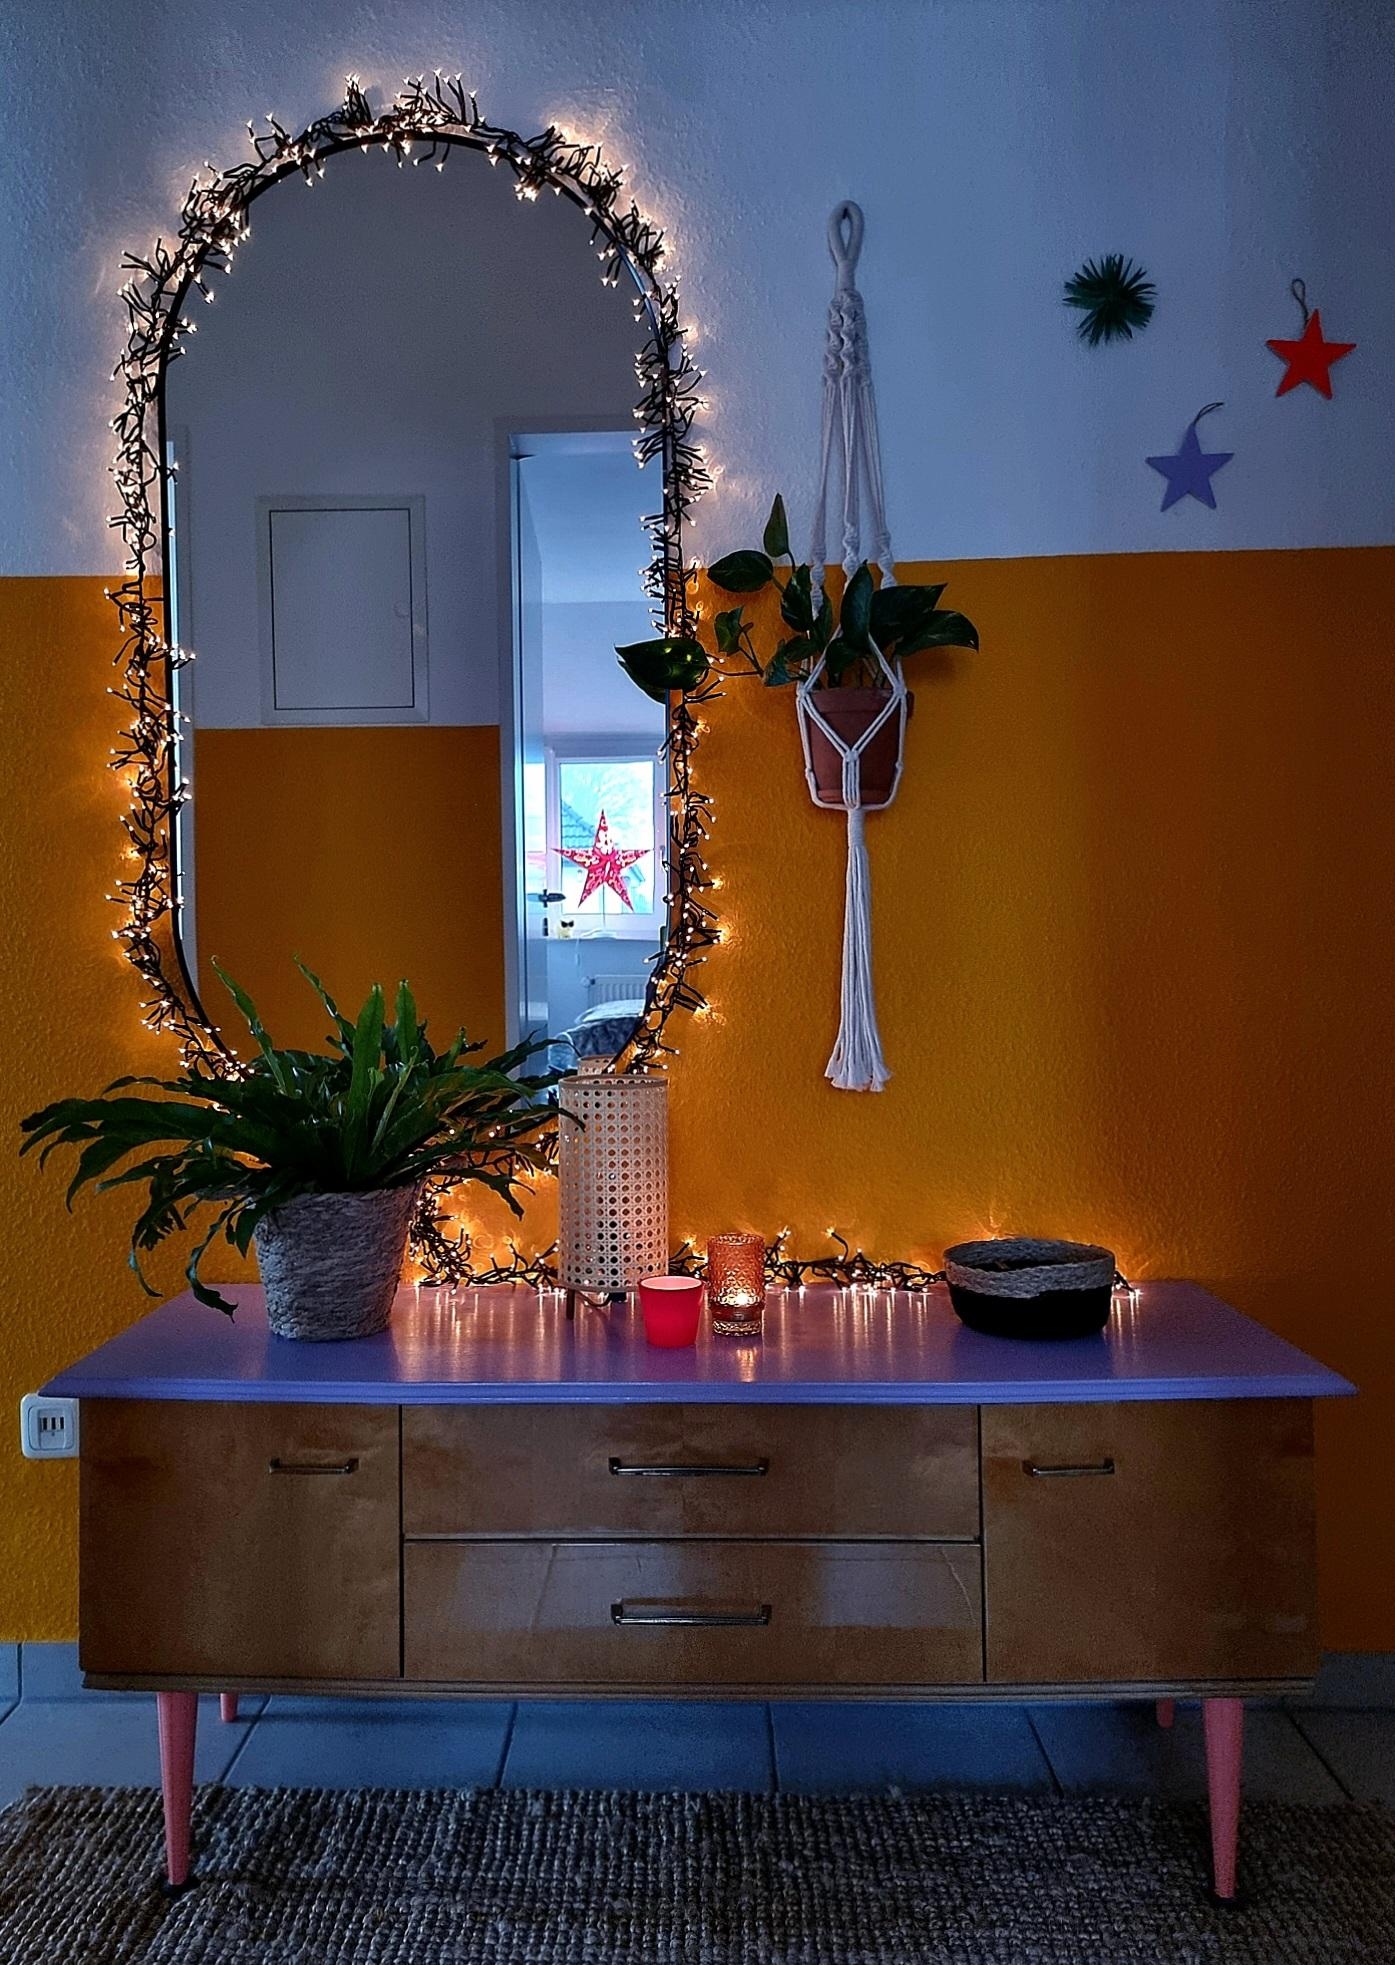 #Magicmoments for you 💫🎅..große #Liebe für die #Lichterkette und die #Sterne #Weihnachtsdeko im #Flur #Xmas #Vintage #Cozy #Interior 